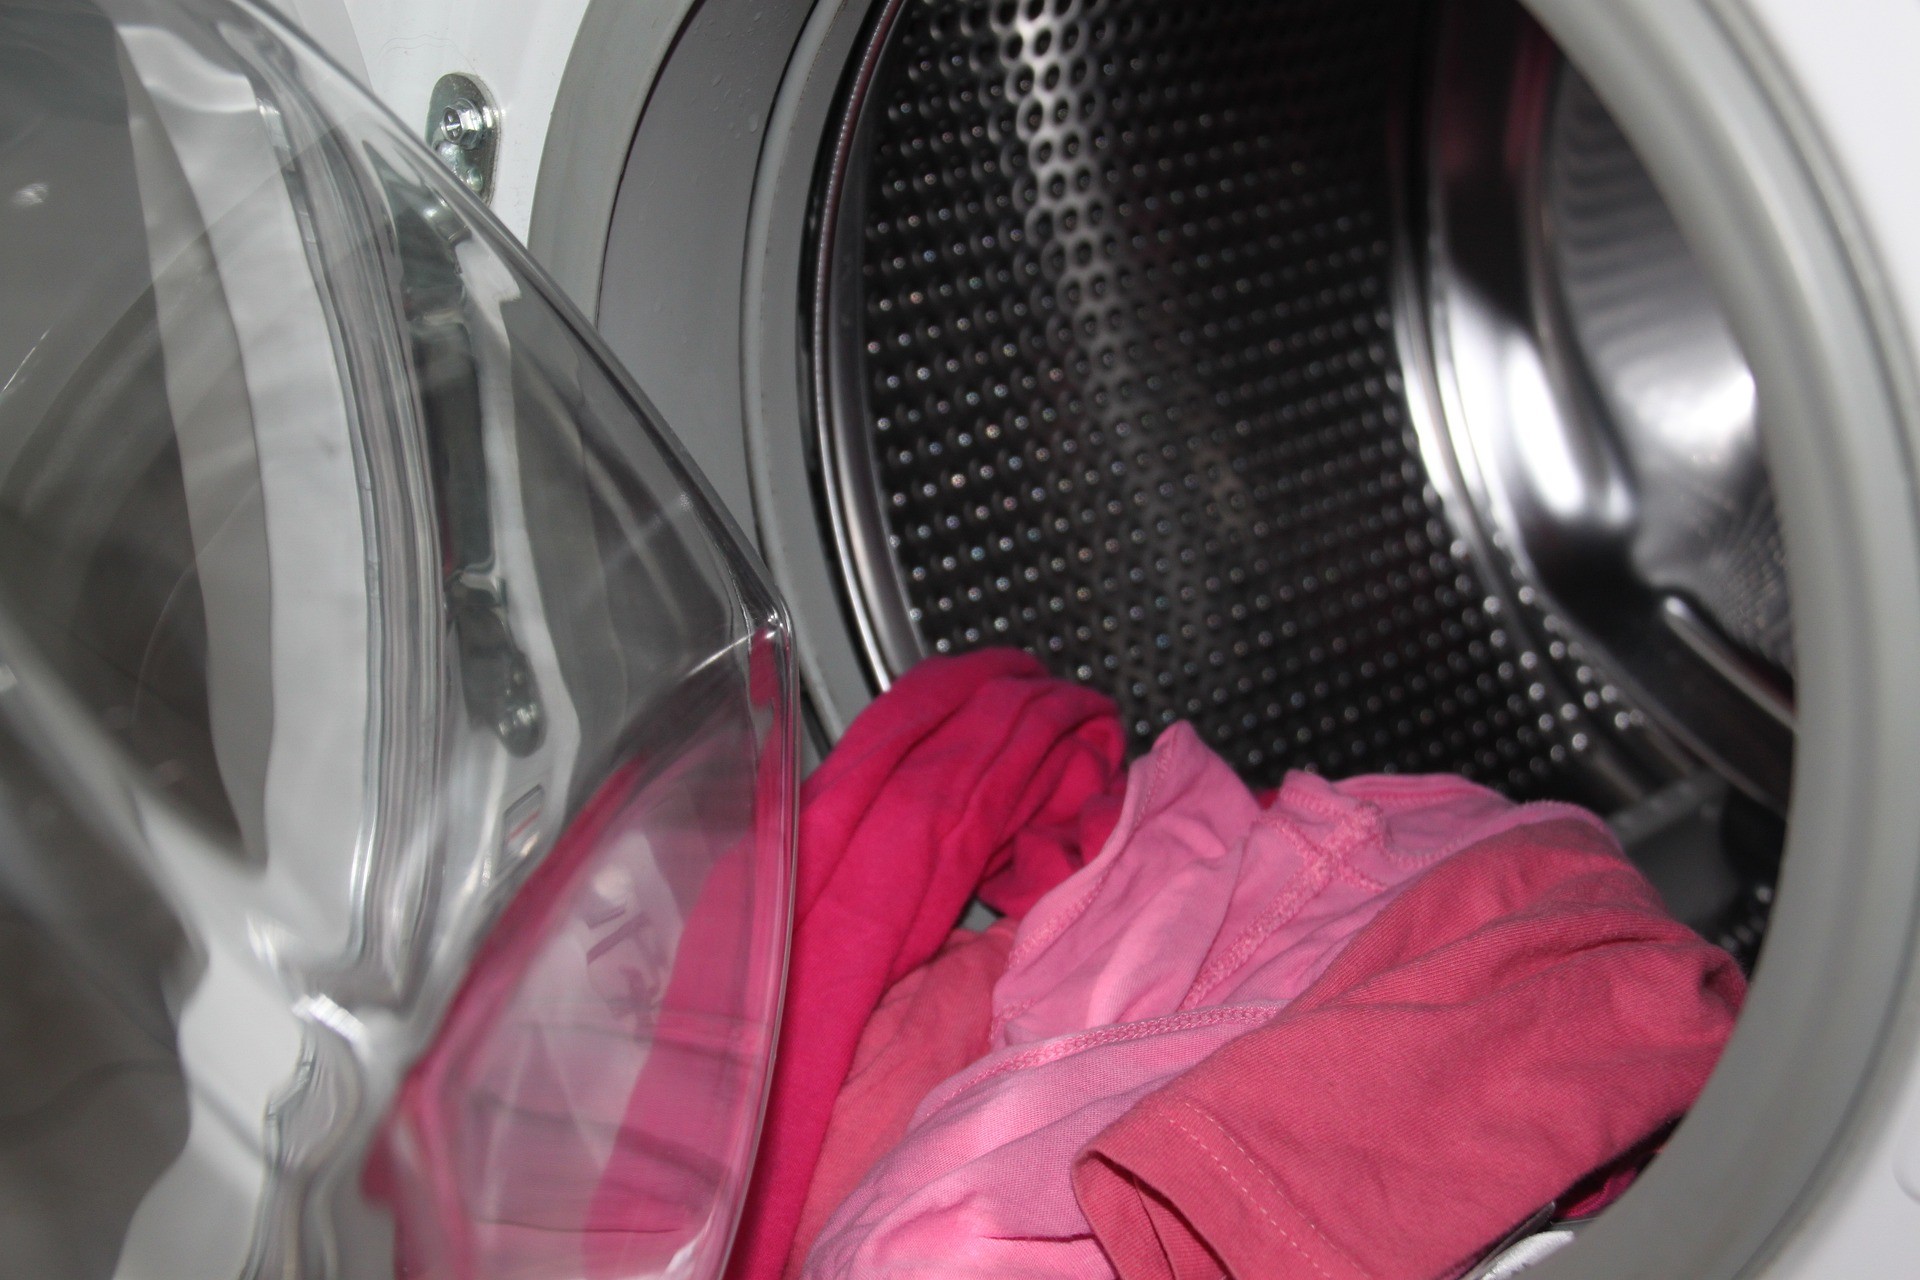 90 Grad Wäsche - Was kommt rein? (Quelle: Pixabay.com)